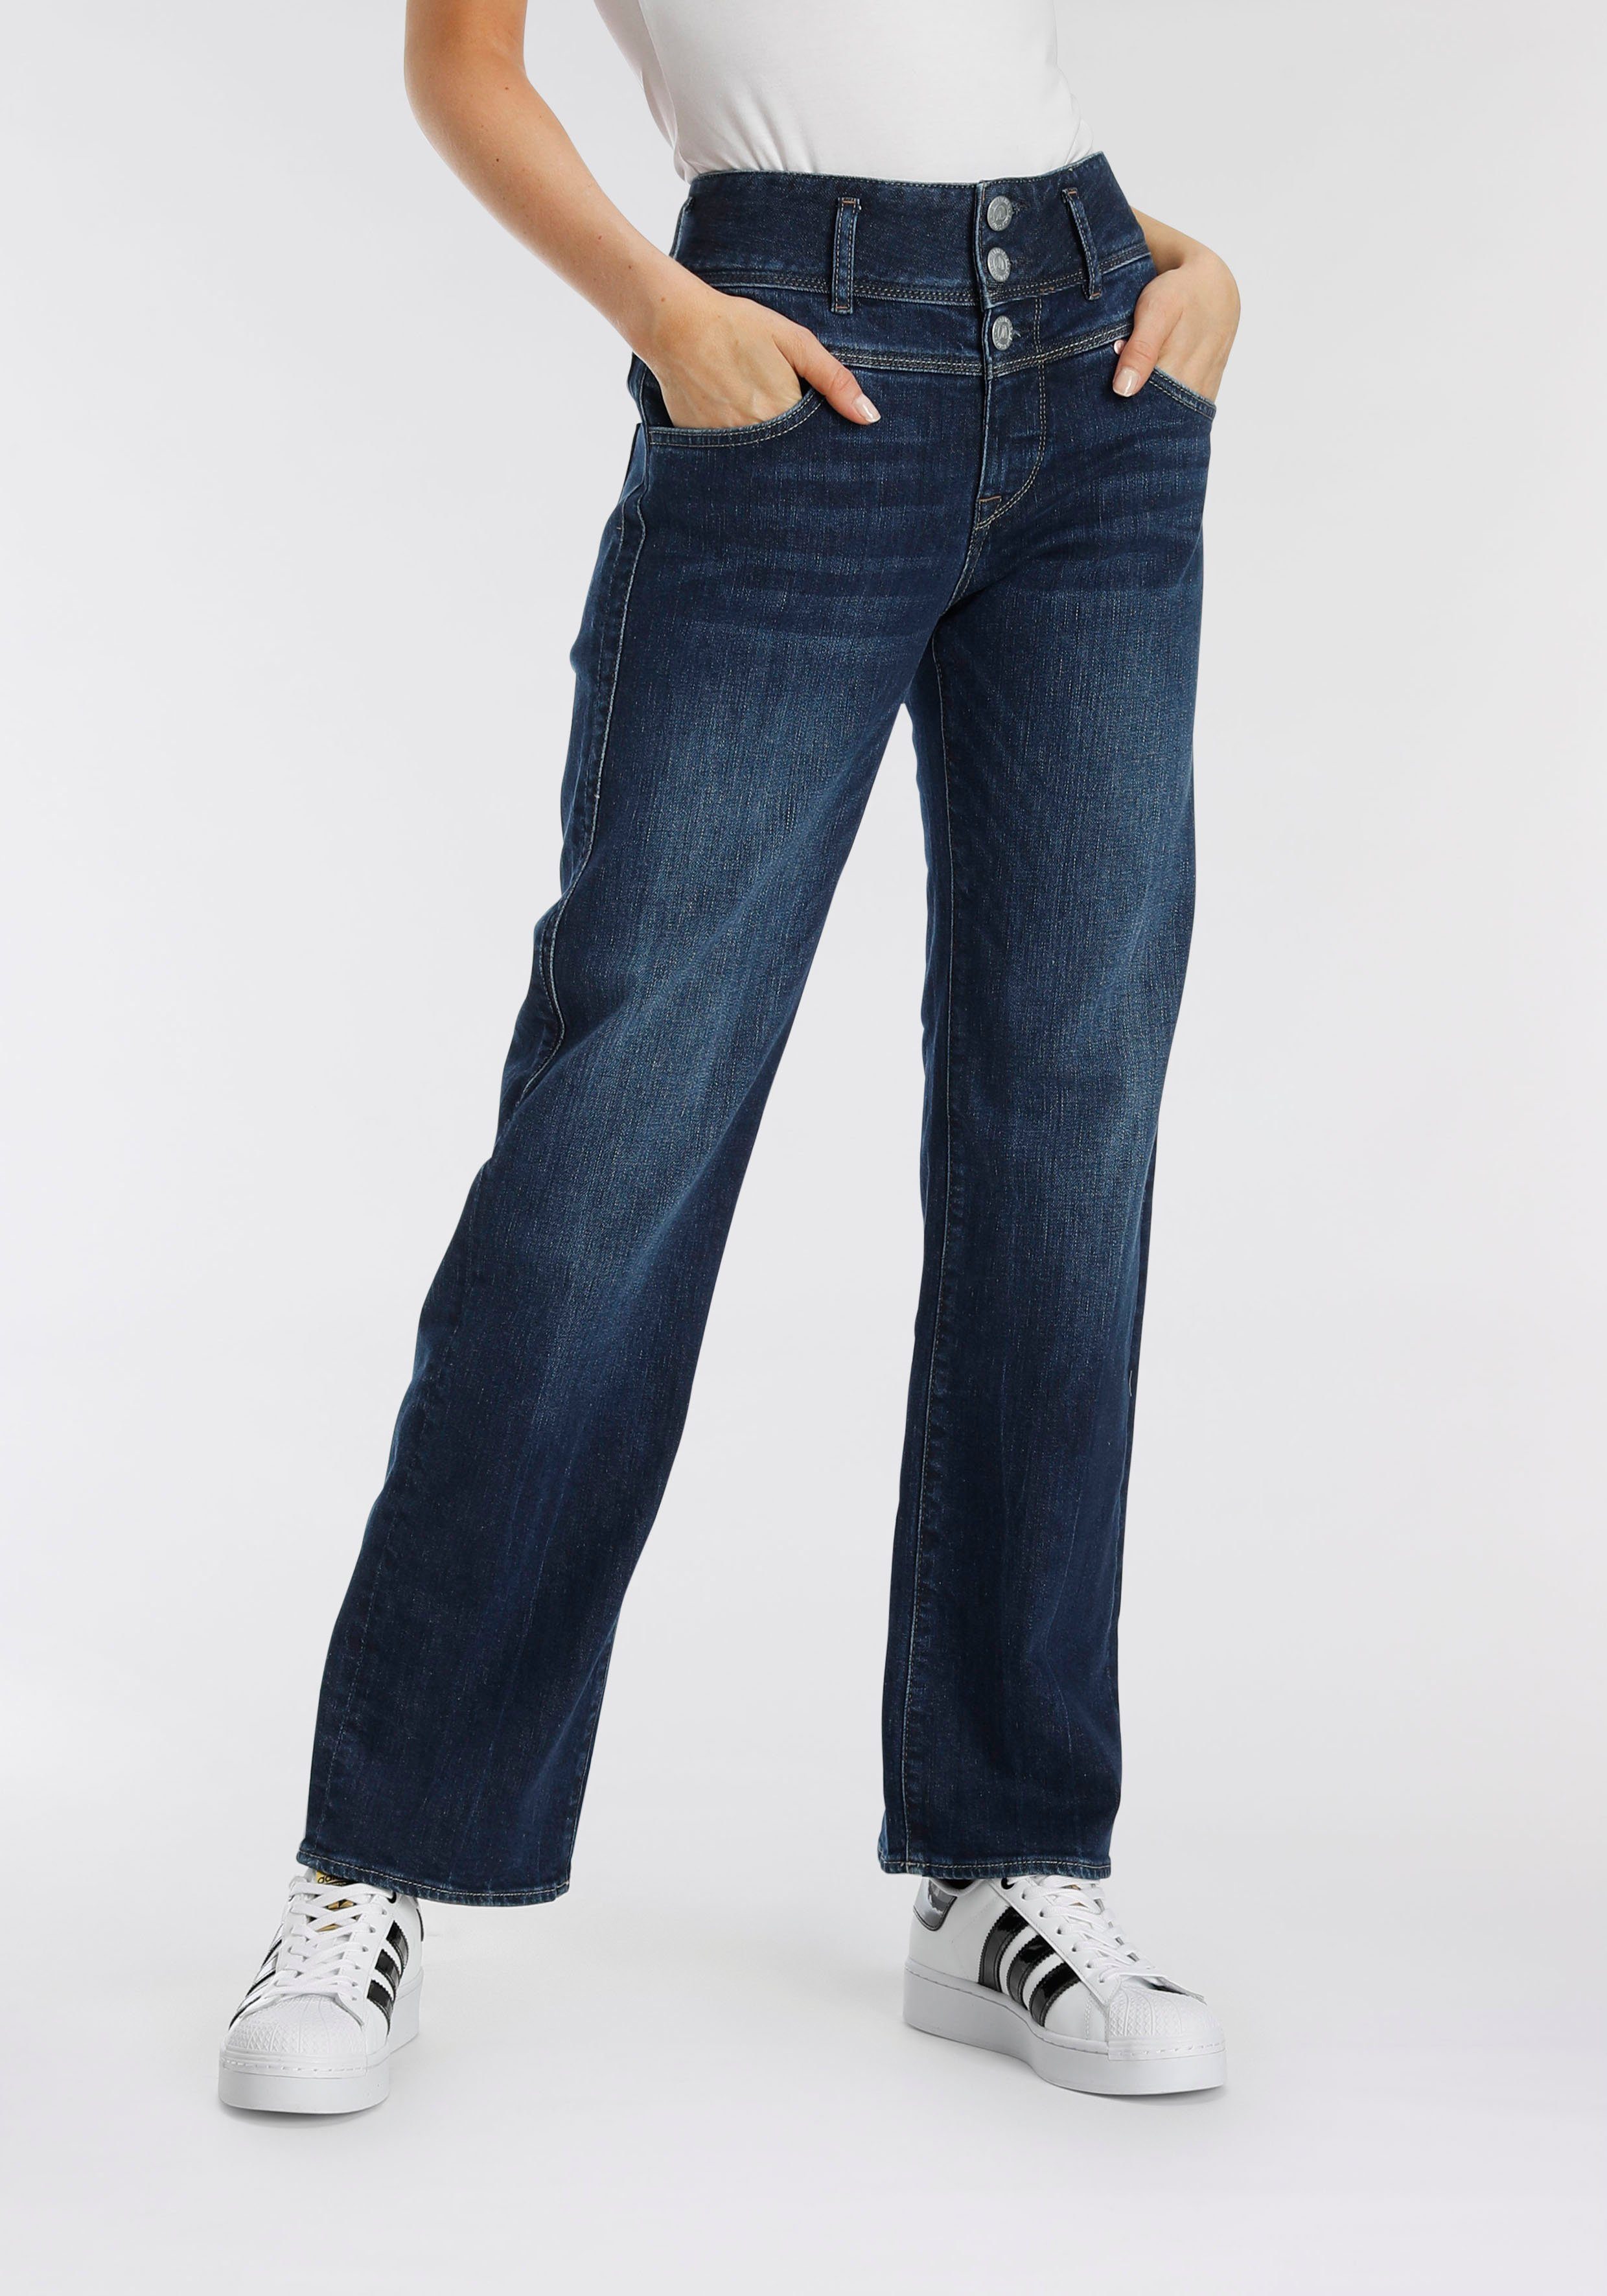 Herrlicher Straight-Jeans RAYA mit seitlichen Keileinsätzen für eine  streckende Wirkung, Gerade Jeans "RAYA" in cleaner Optik von Herrlicher